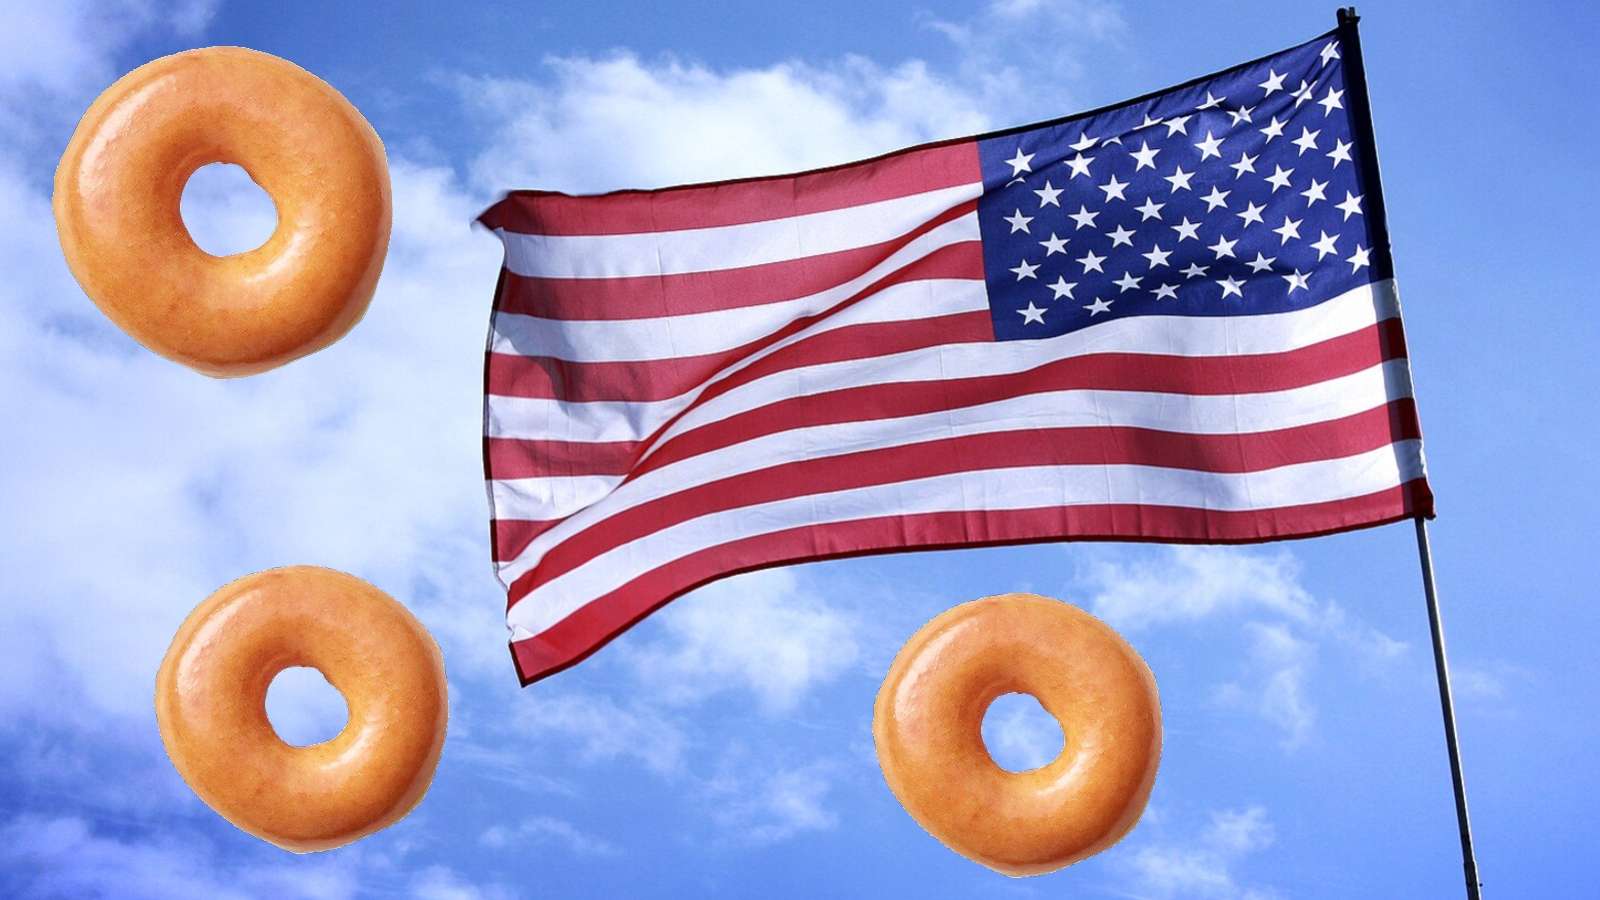 American flag krispy kreme doughnut